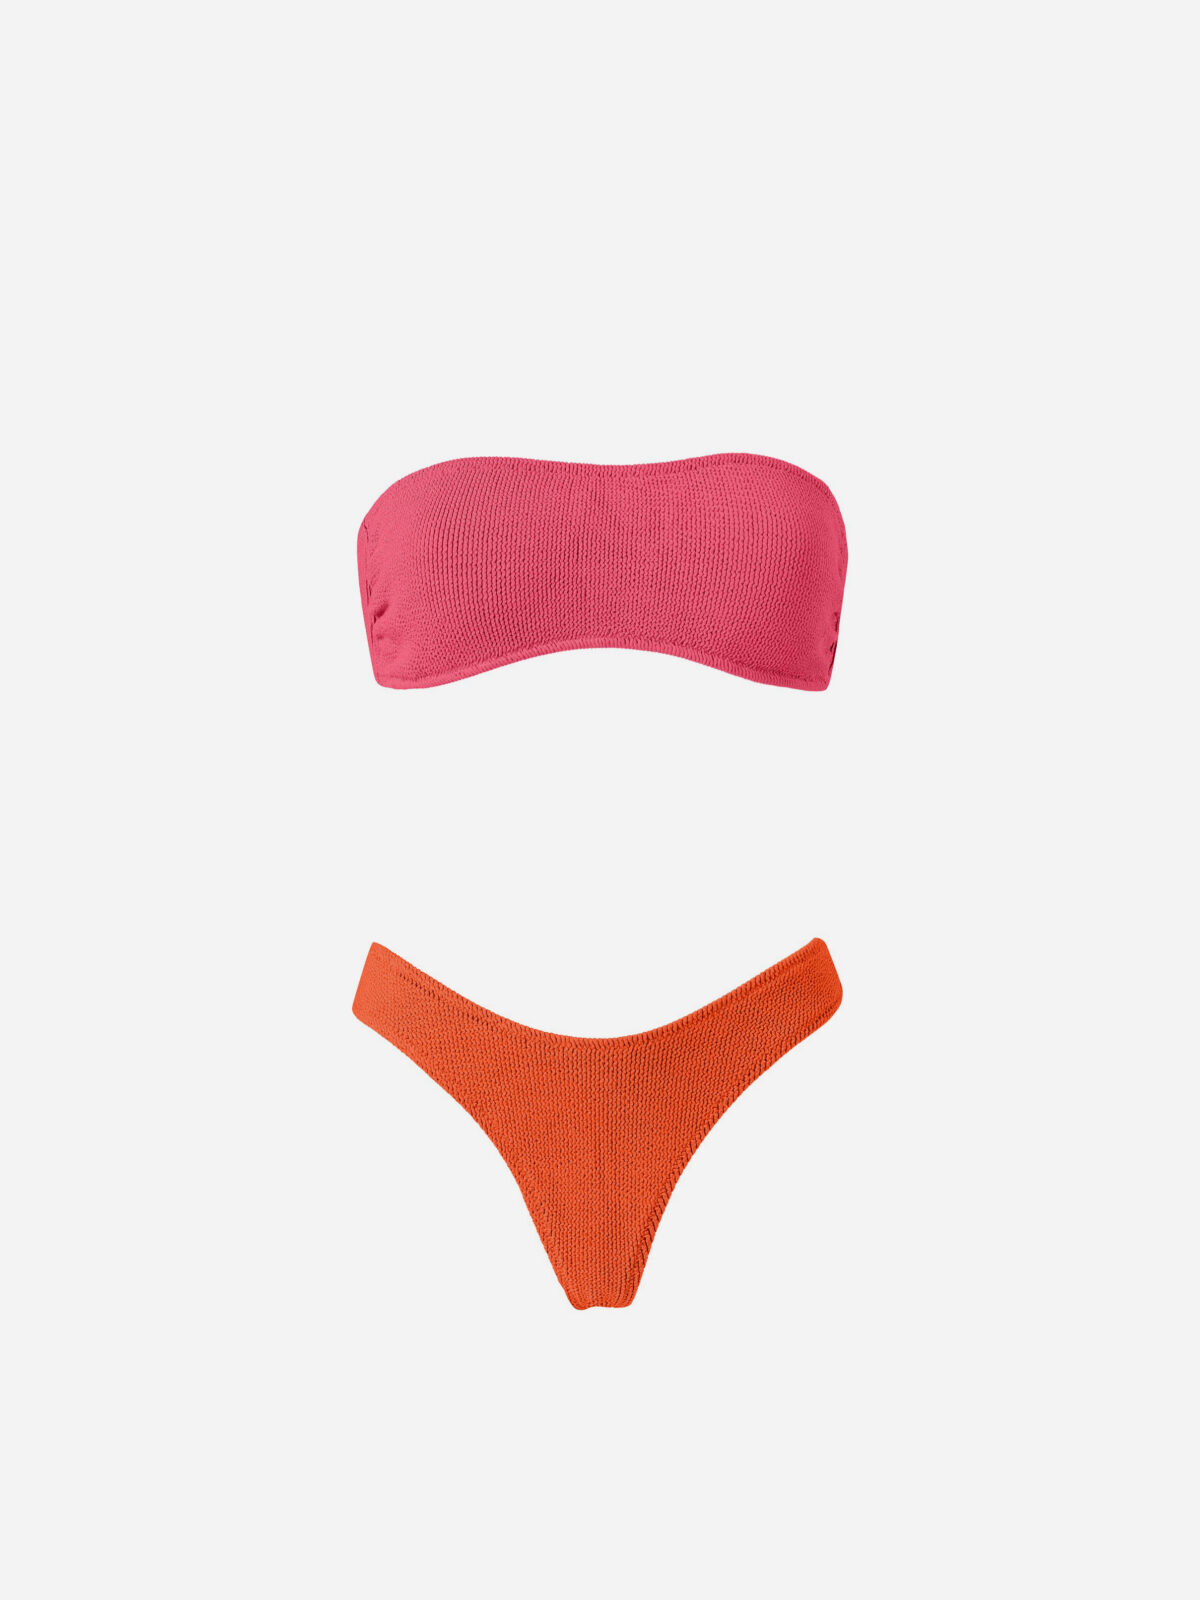 JORDAN-FUCHSIA-ORANGE-sheersucker-strapless-bikini-stefania-frangista-matchboxathens